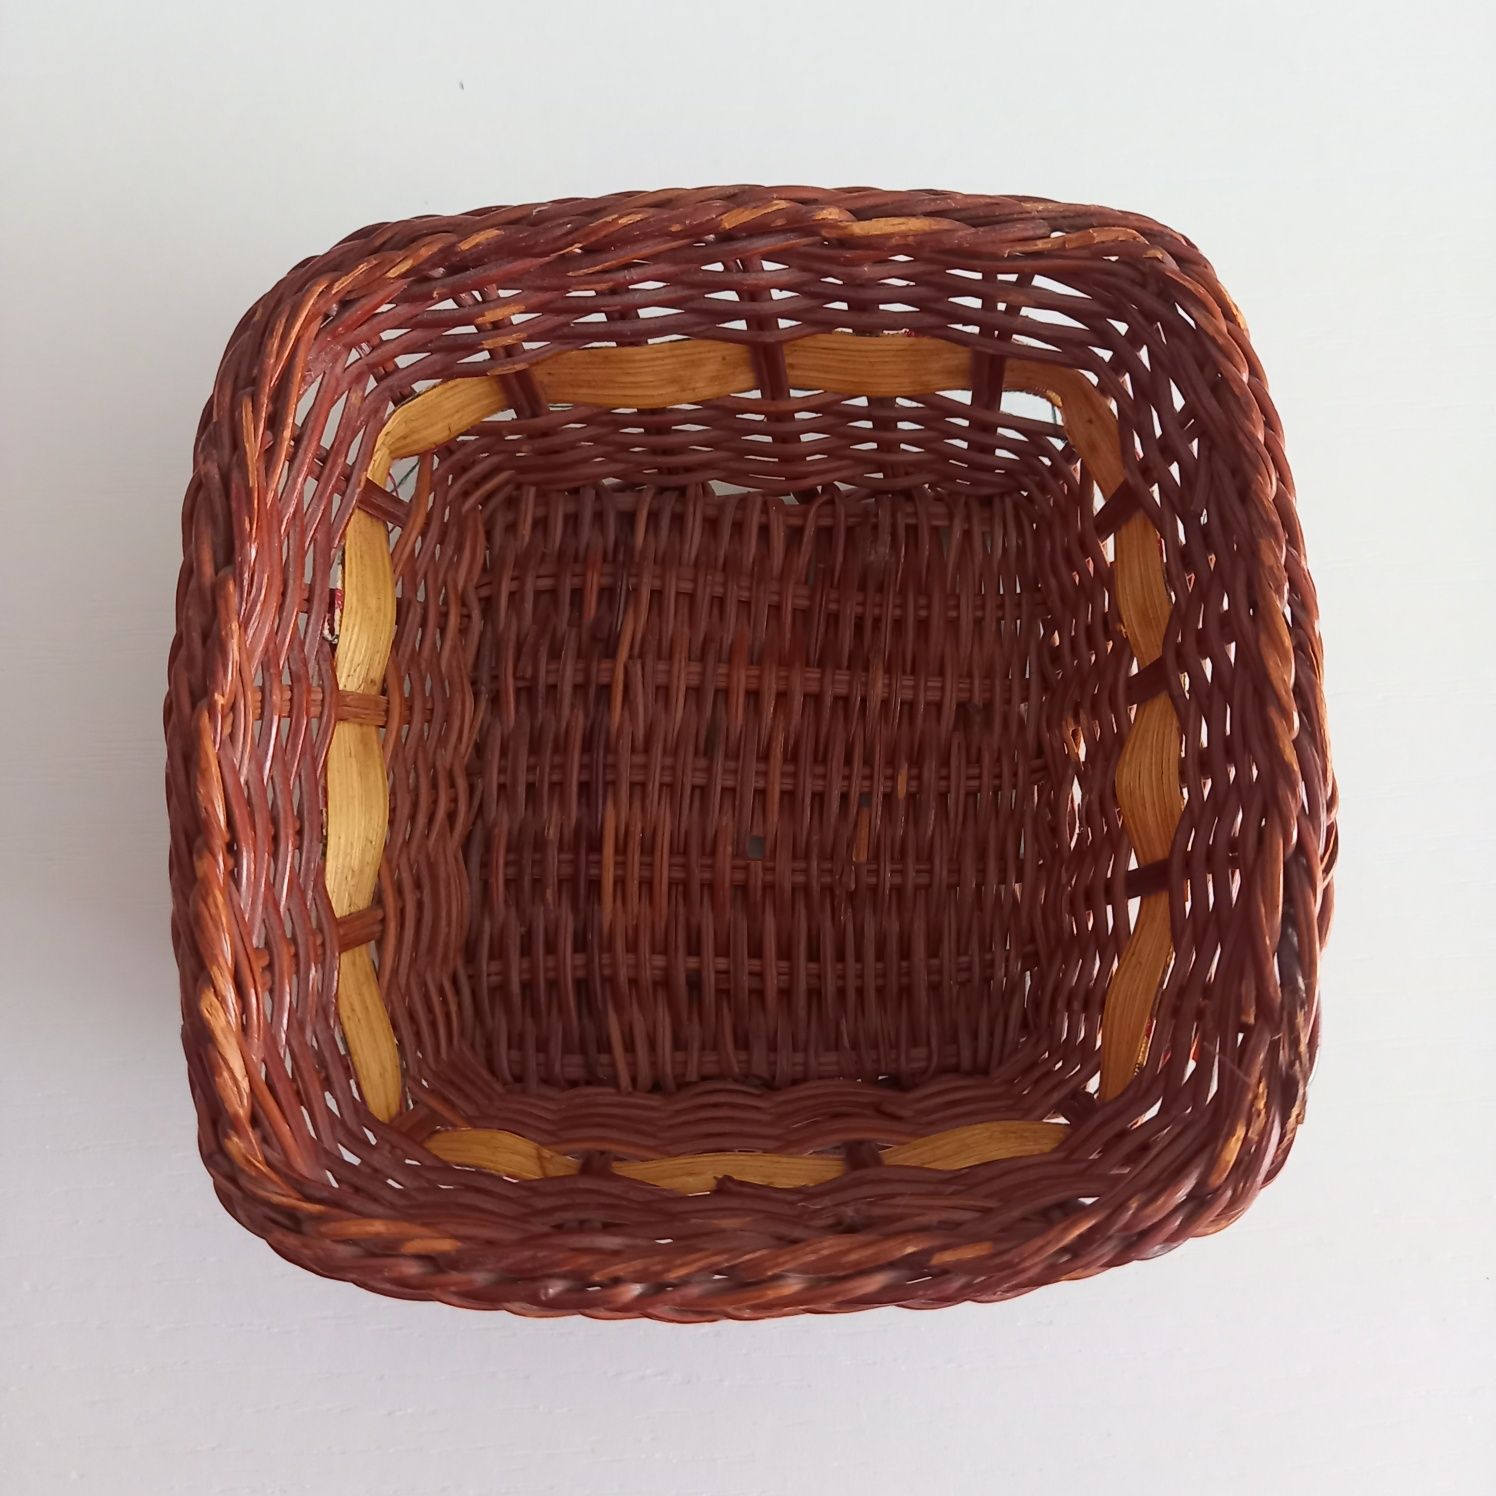 Piękny koszyk koszyczek wiklinowy brązowy pojemnik handmade zdobiony